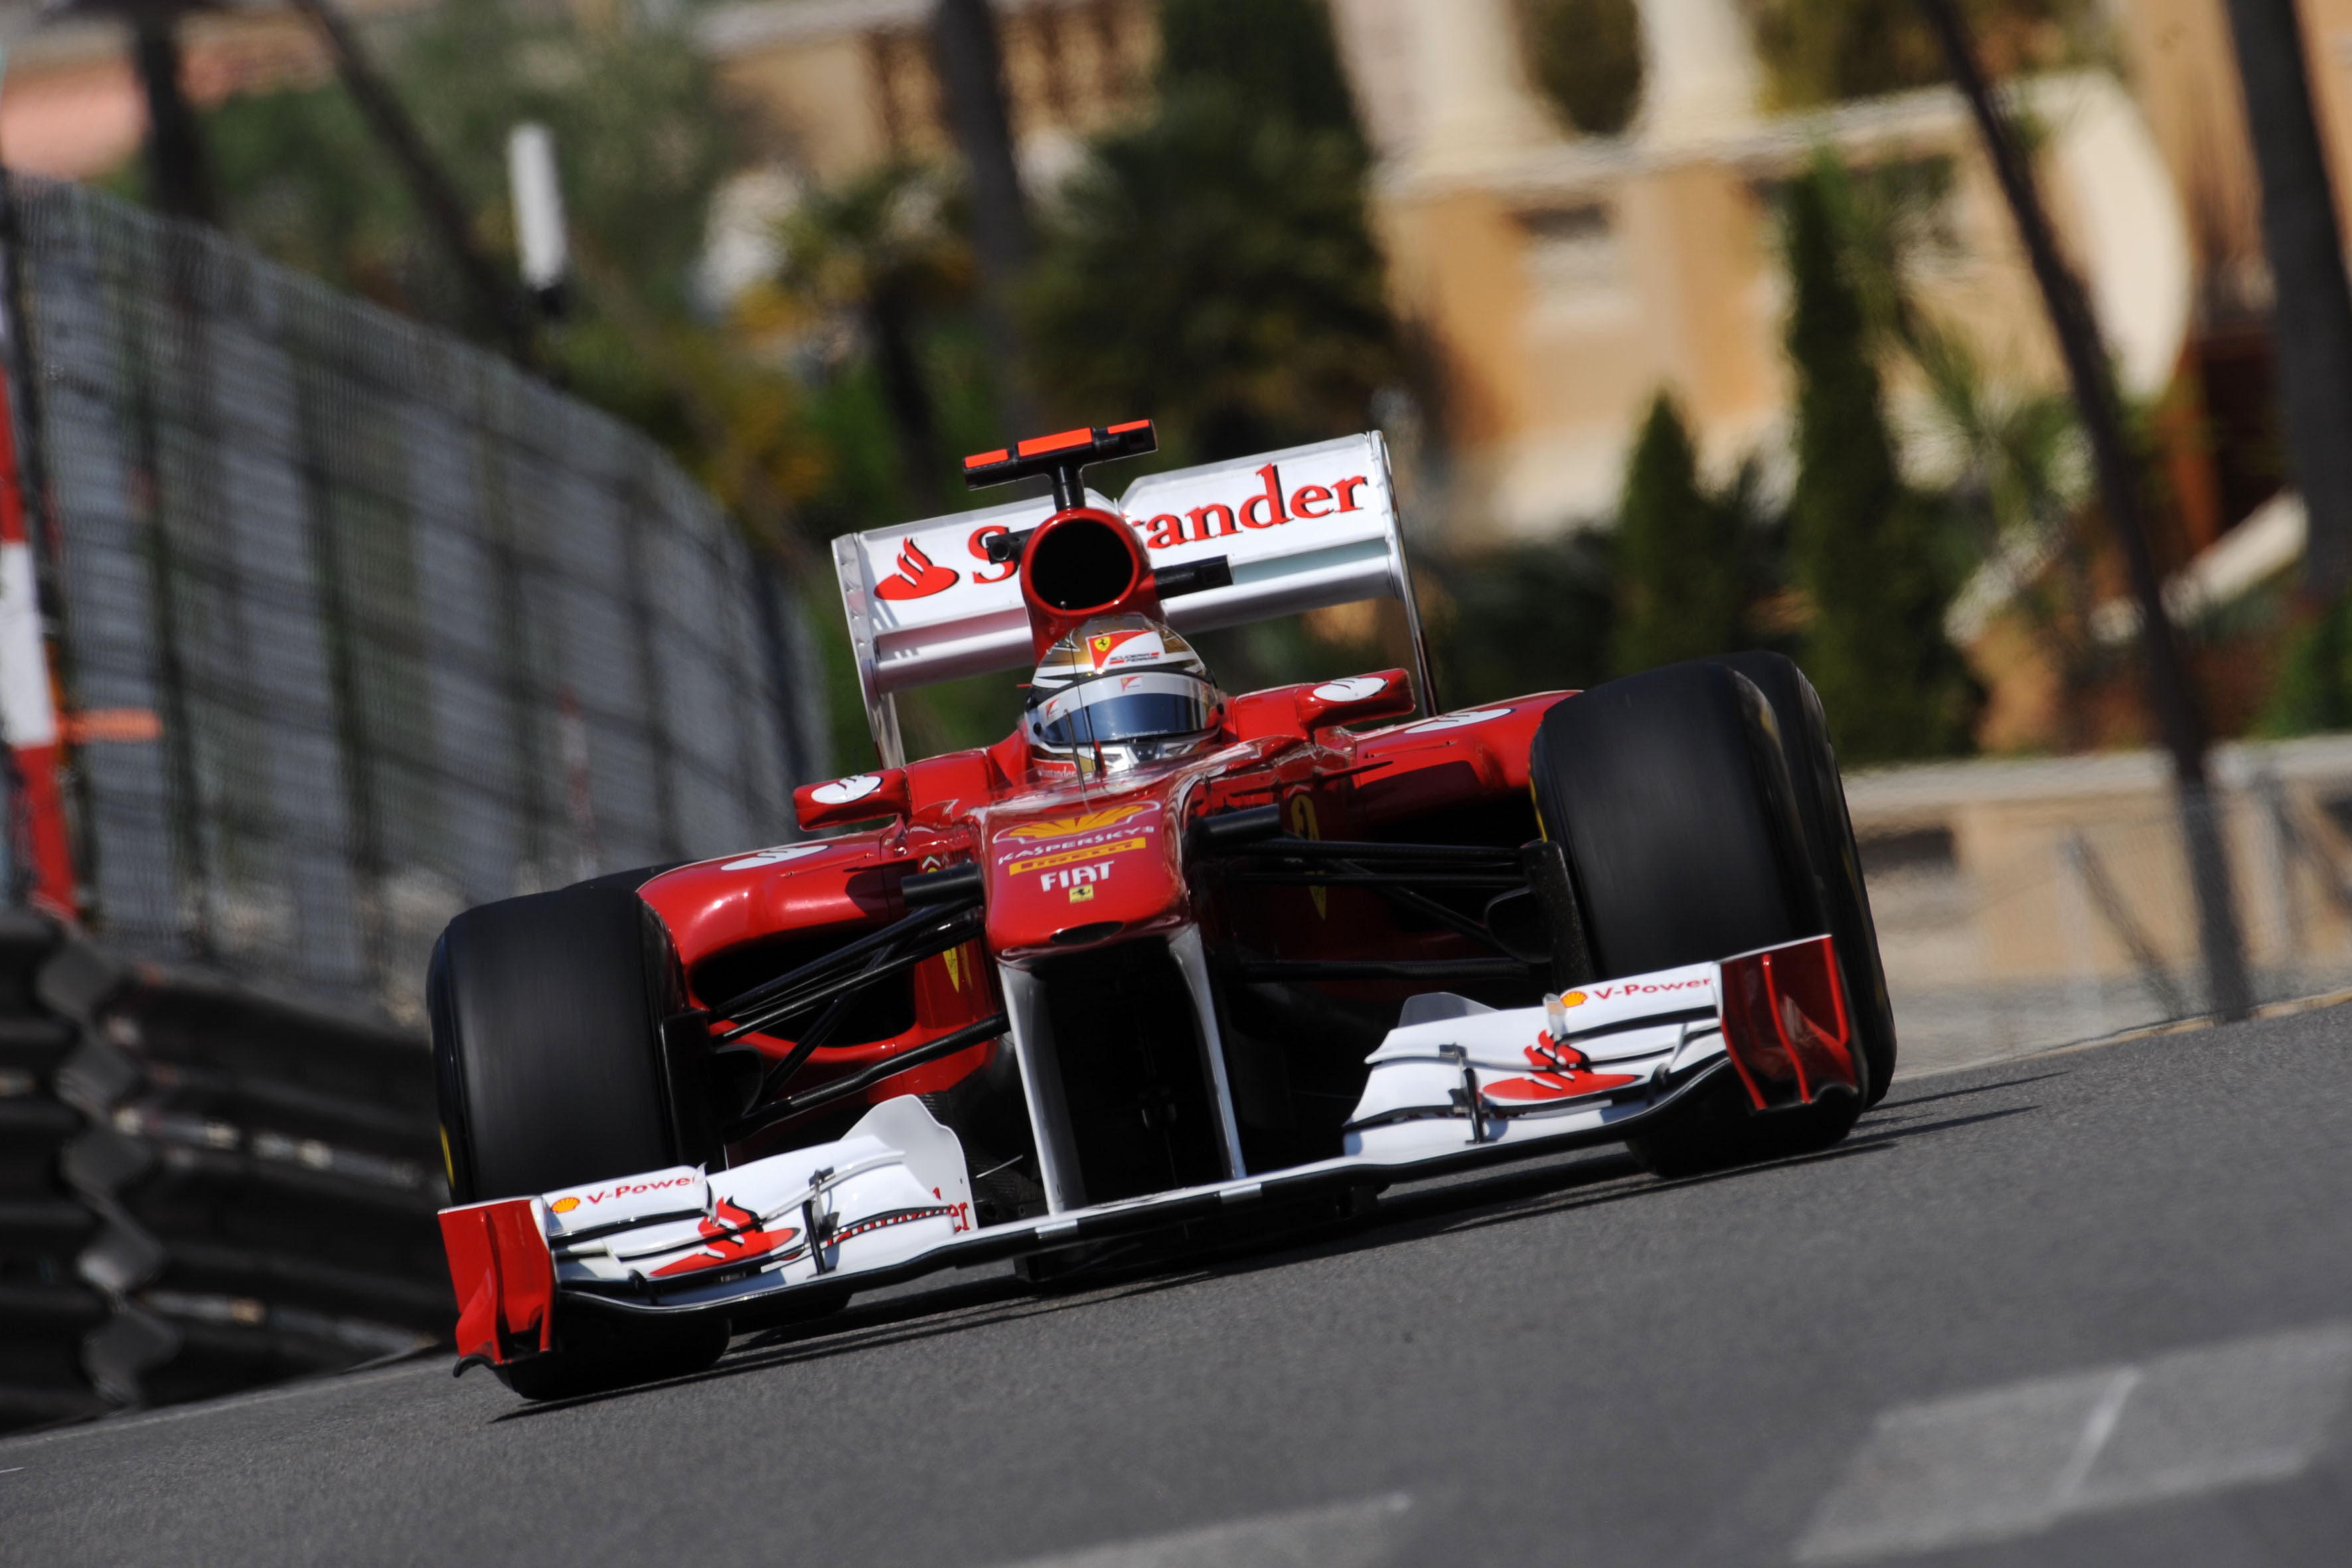 Fernando Alonso Monaco 2011 - HD Wallpaper 